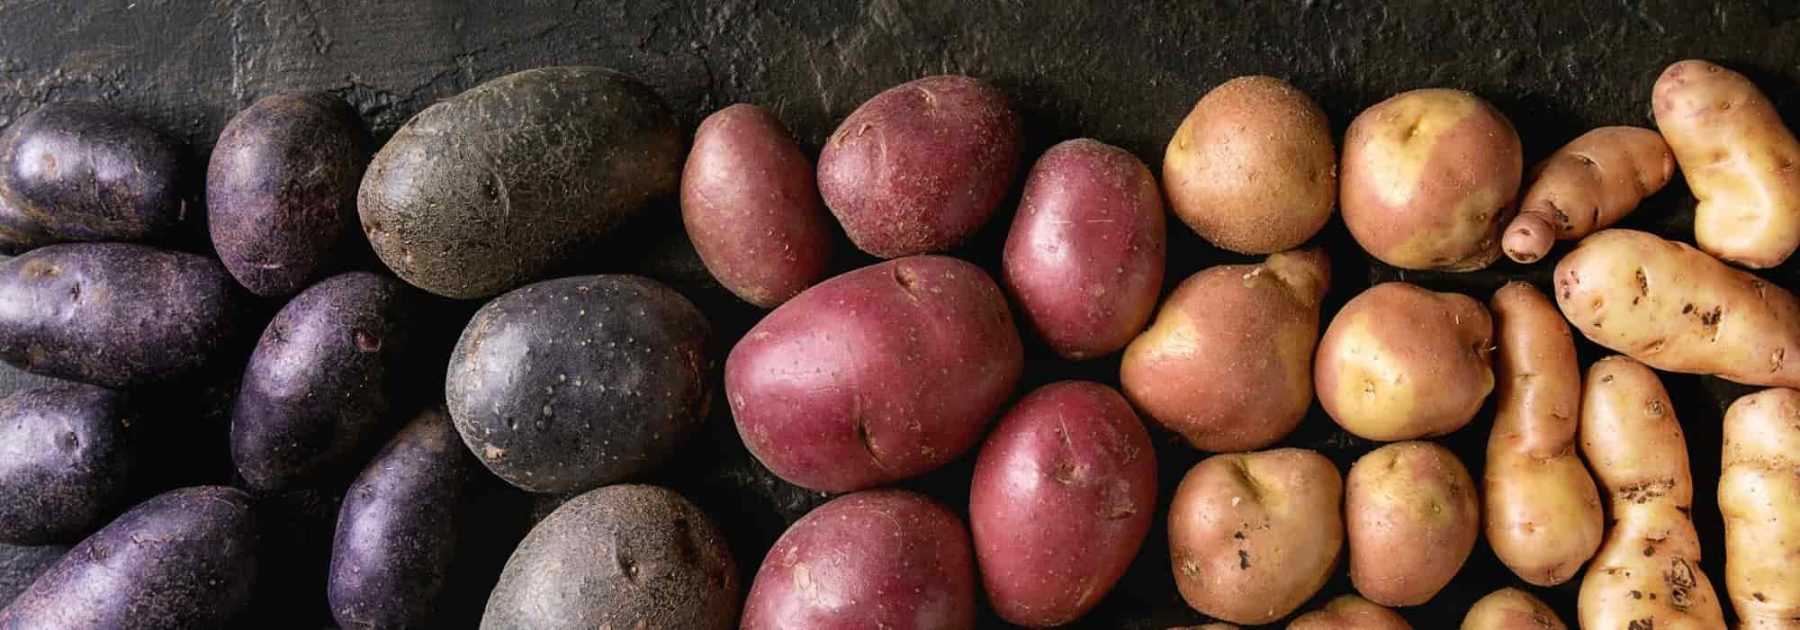 Des pommes de terre colorées et originales -Promesse de Fleurs